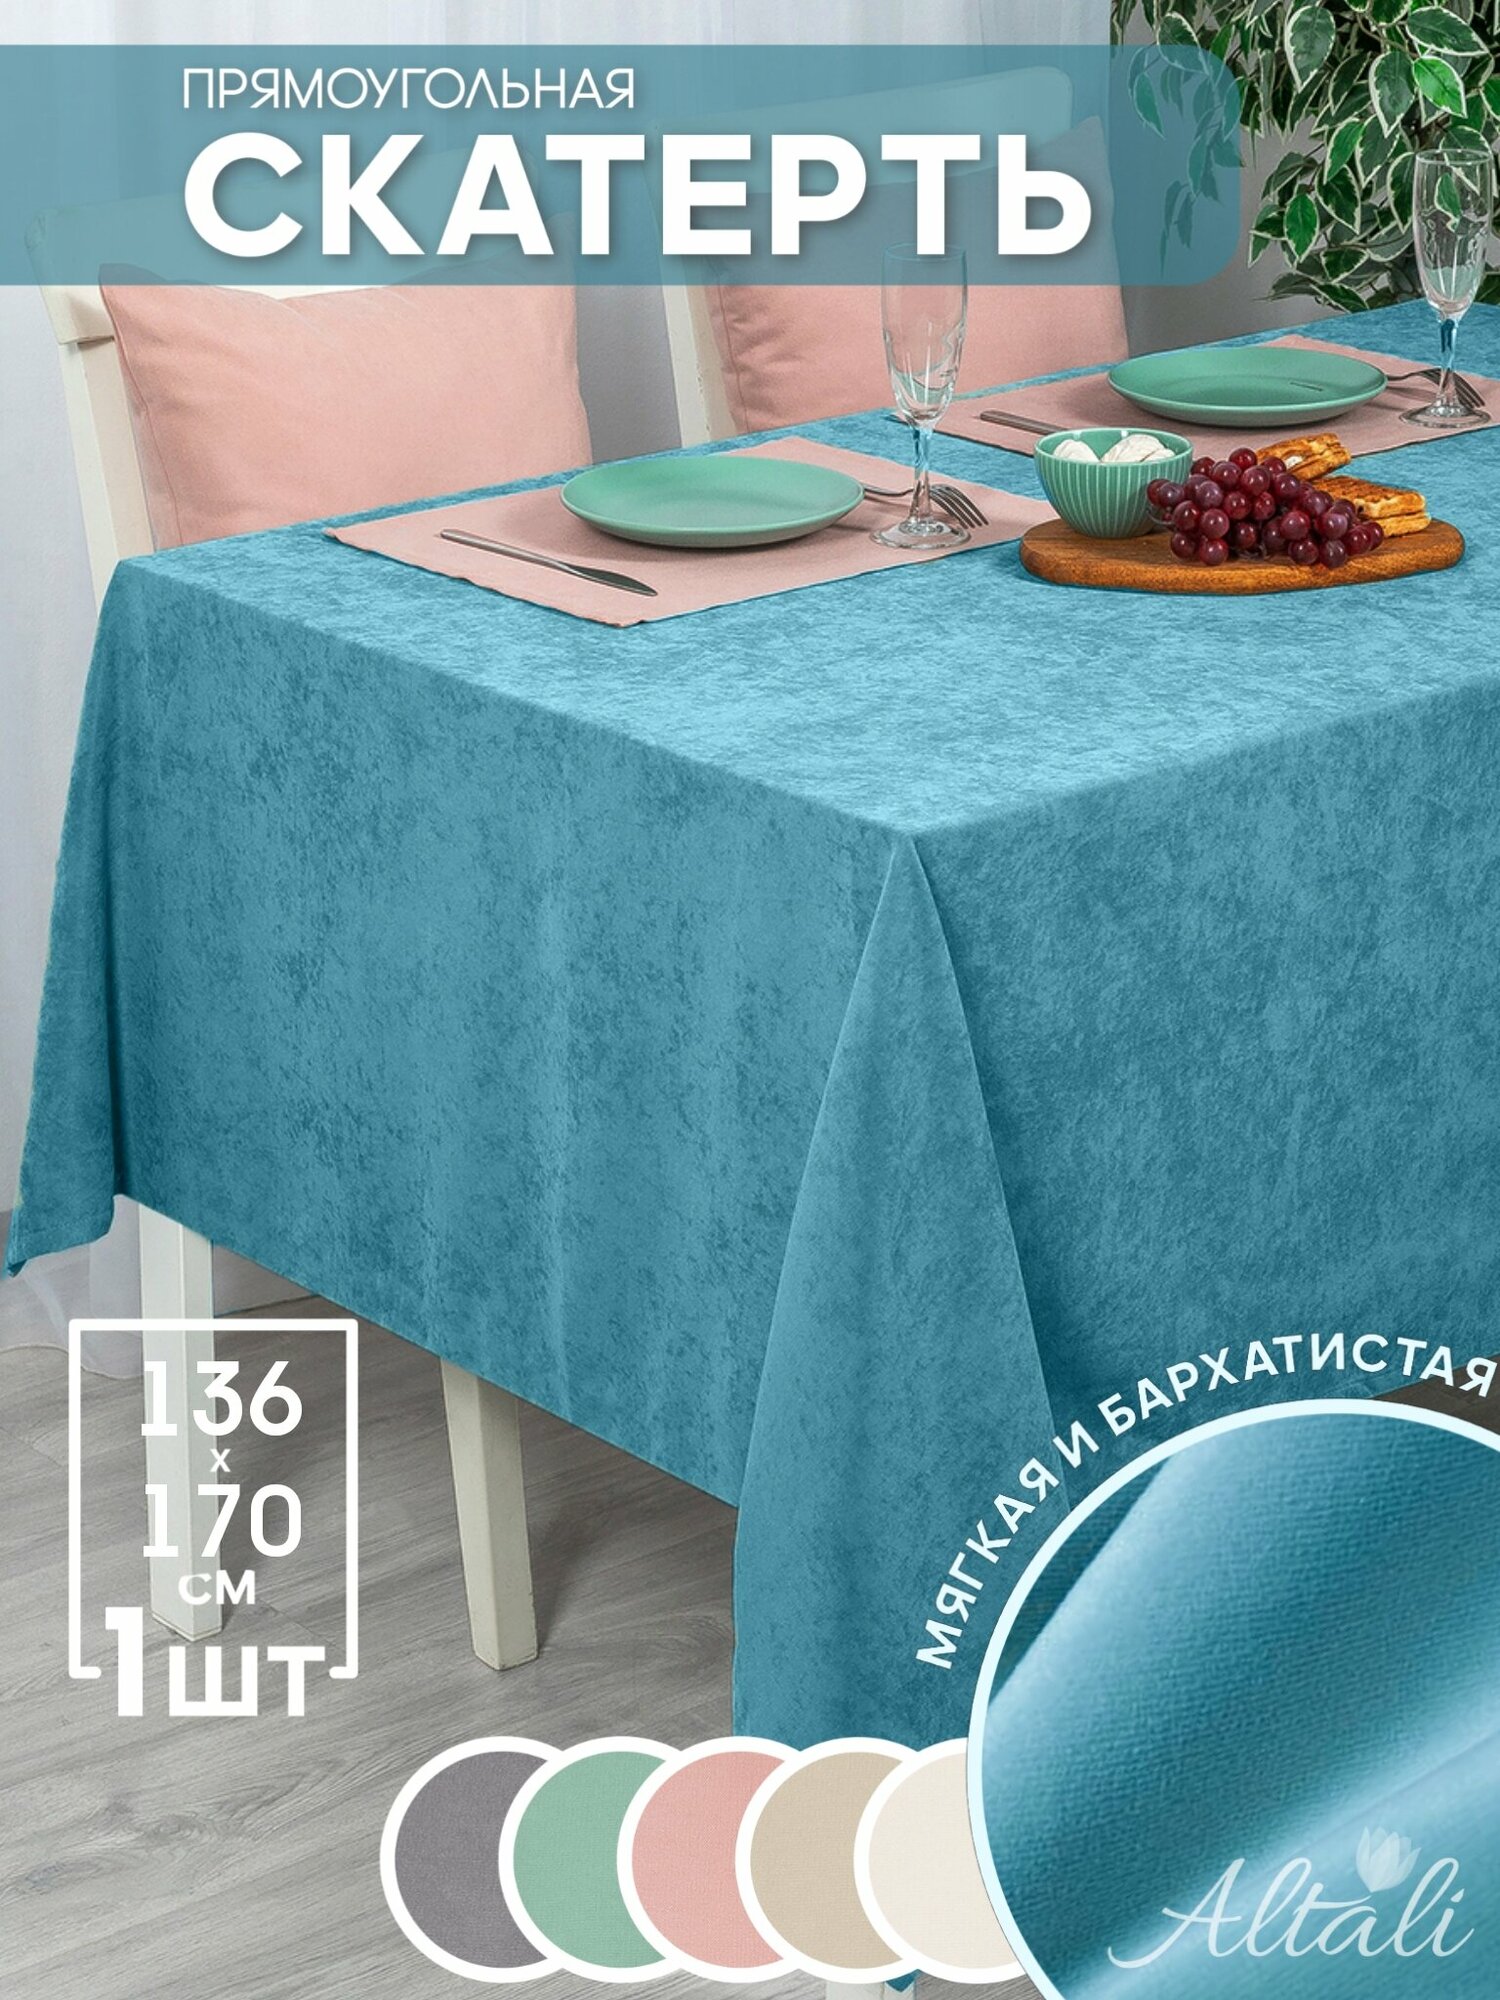 Скатерть кухонная прямоугольная на стол 136x170 Морская волна 2 / ткань велюр / для кухни, дома, дачи /Altali